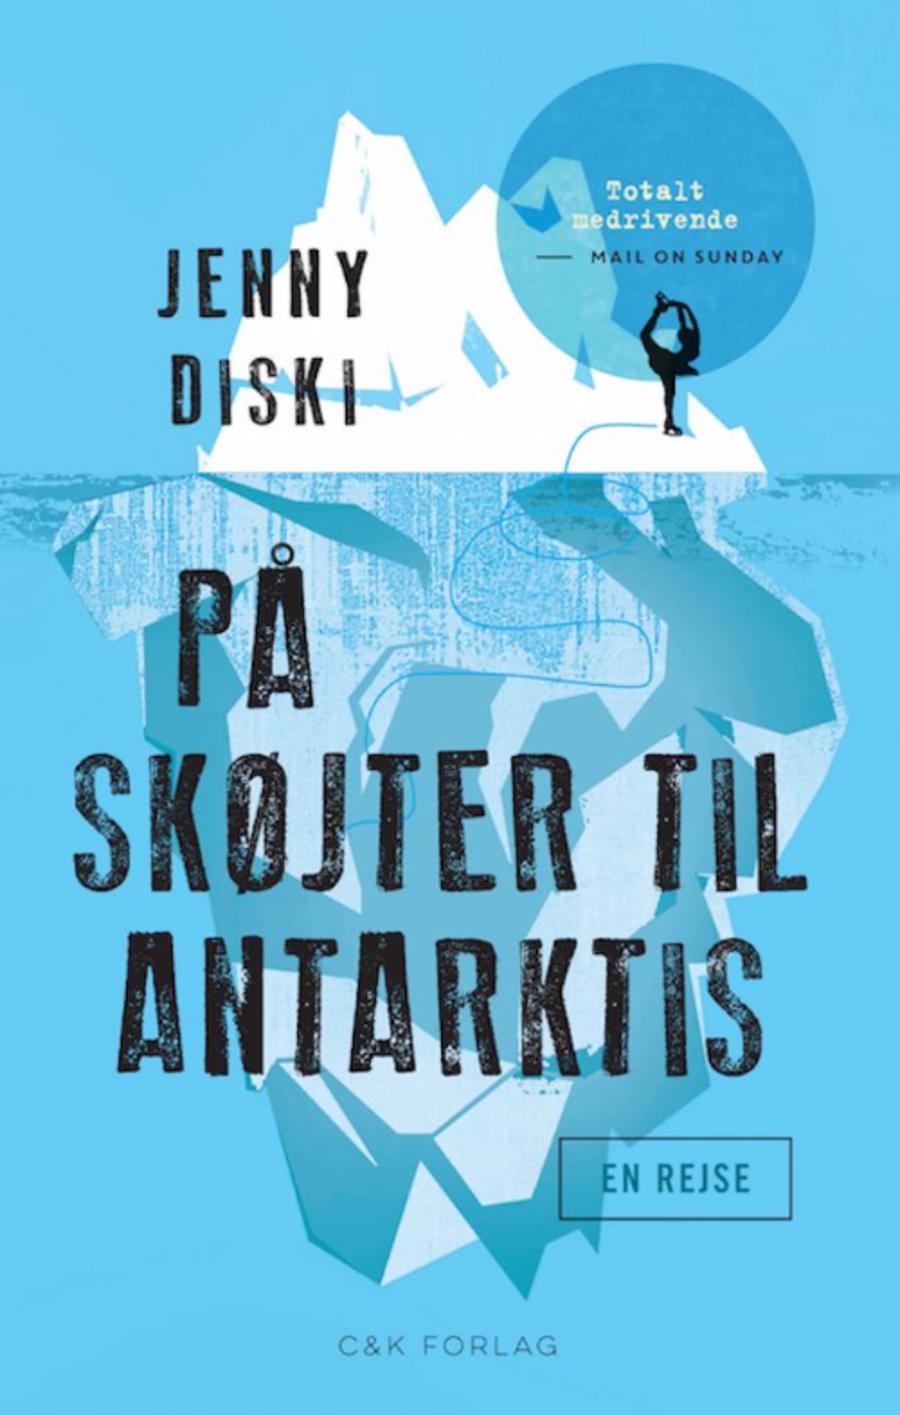 På skøjter til Antarktis af Jenny Diski